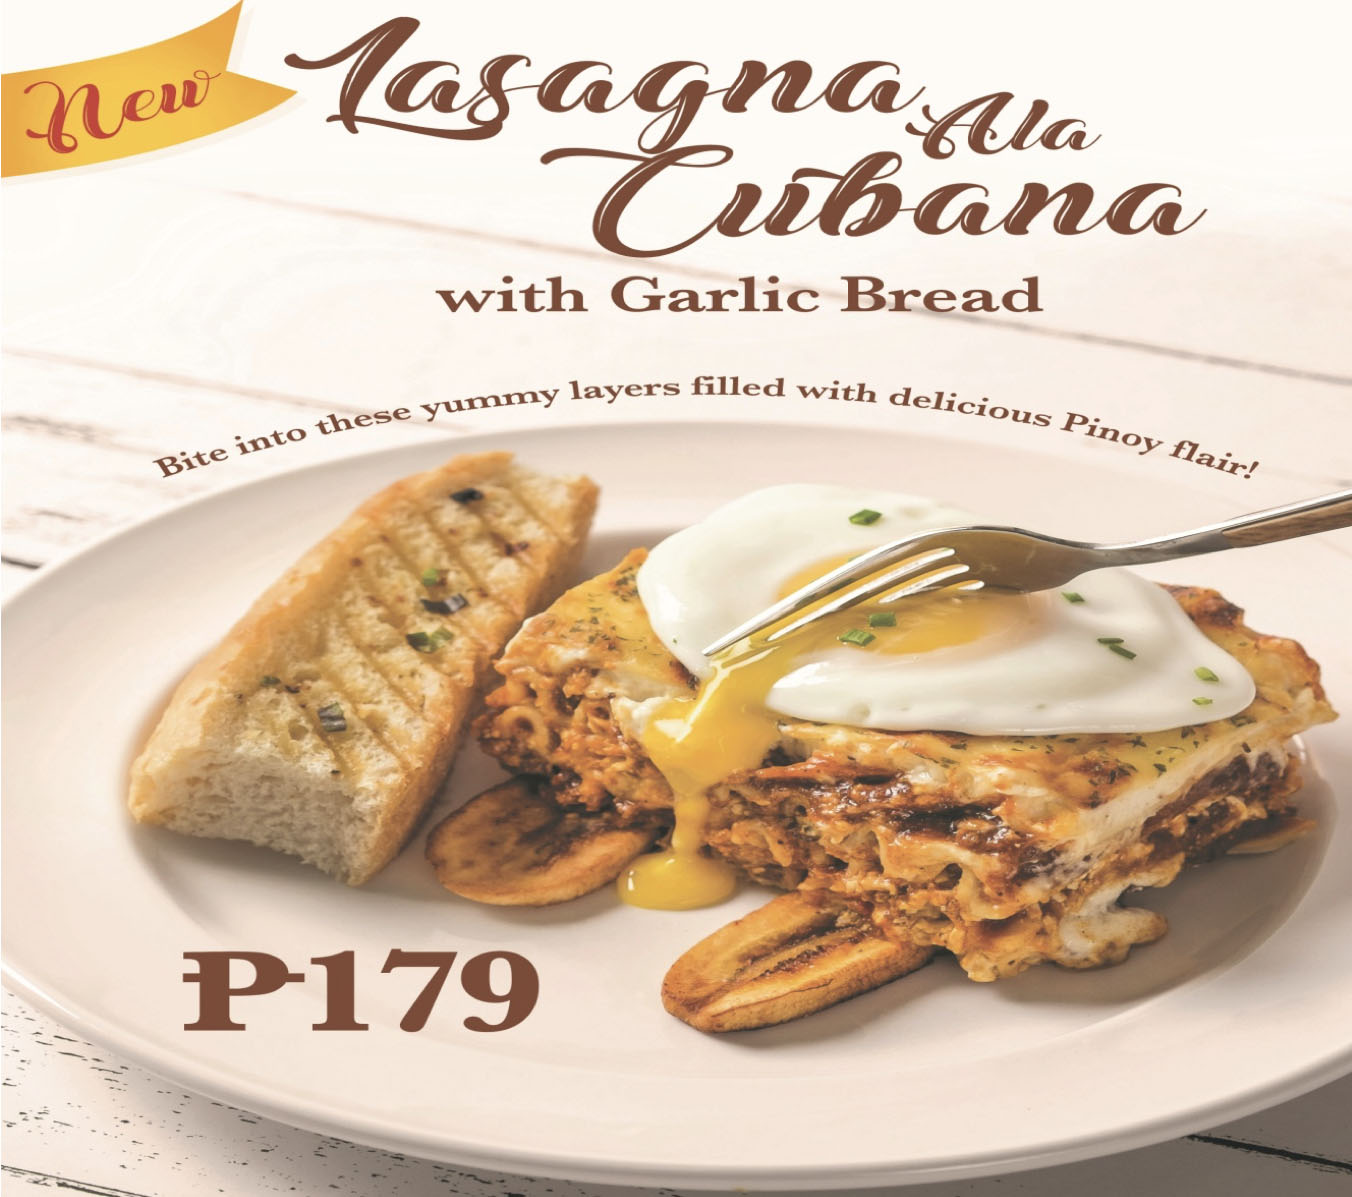 Try the new Goldilocks Lasagna ala Cubana